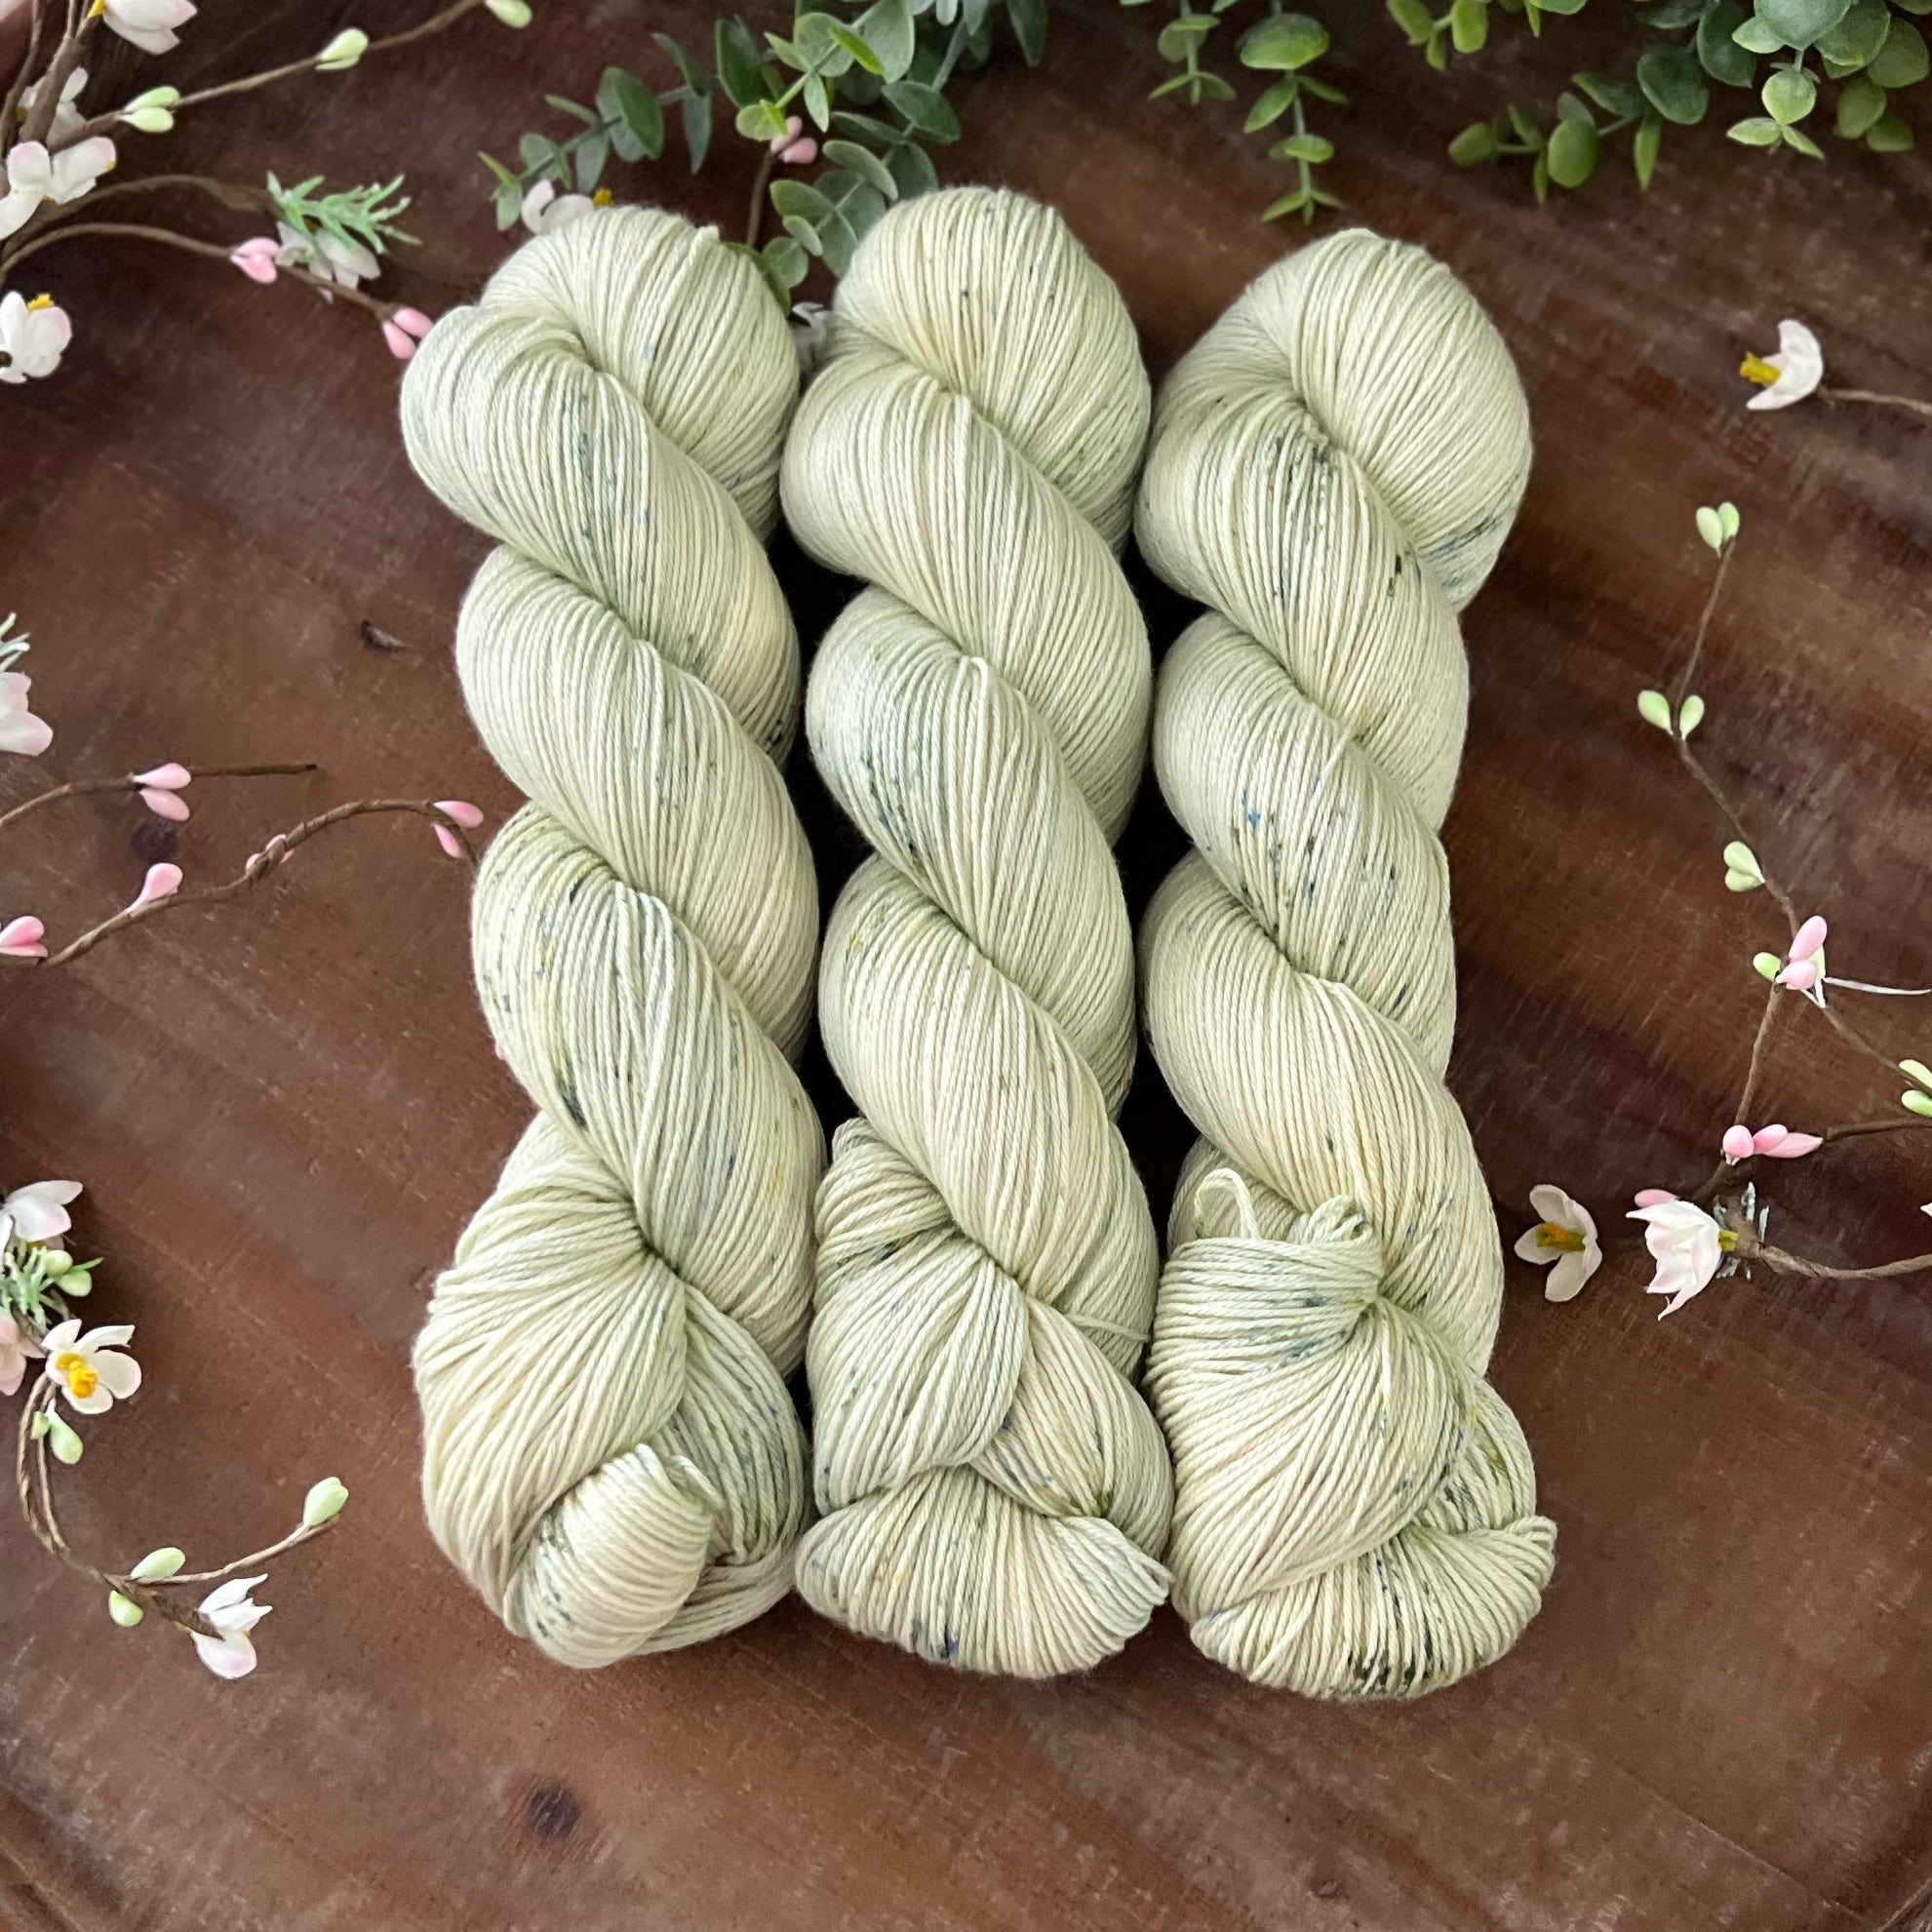 "Grasslands" Merino Cotton 50/50 Hand-dyed Yarn